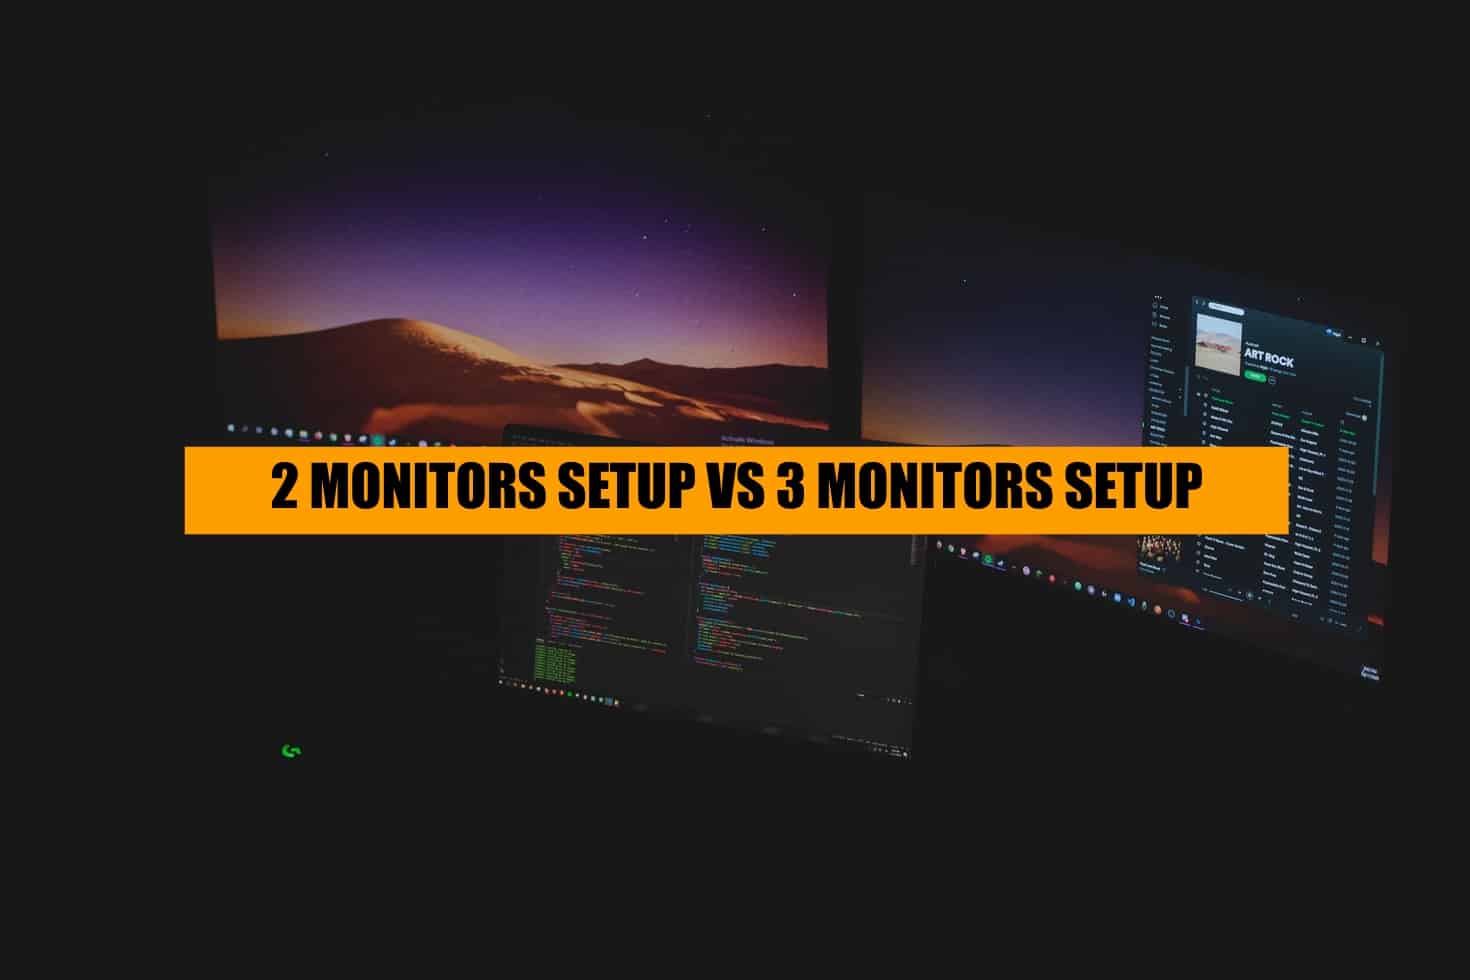 2 monitors vs 3 monitors